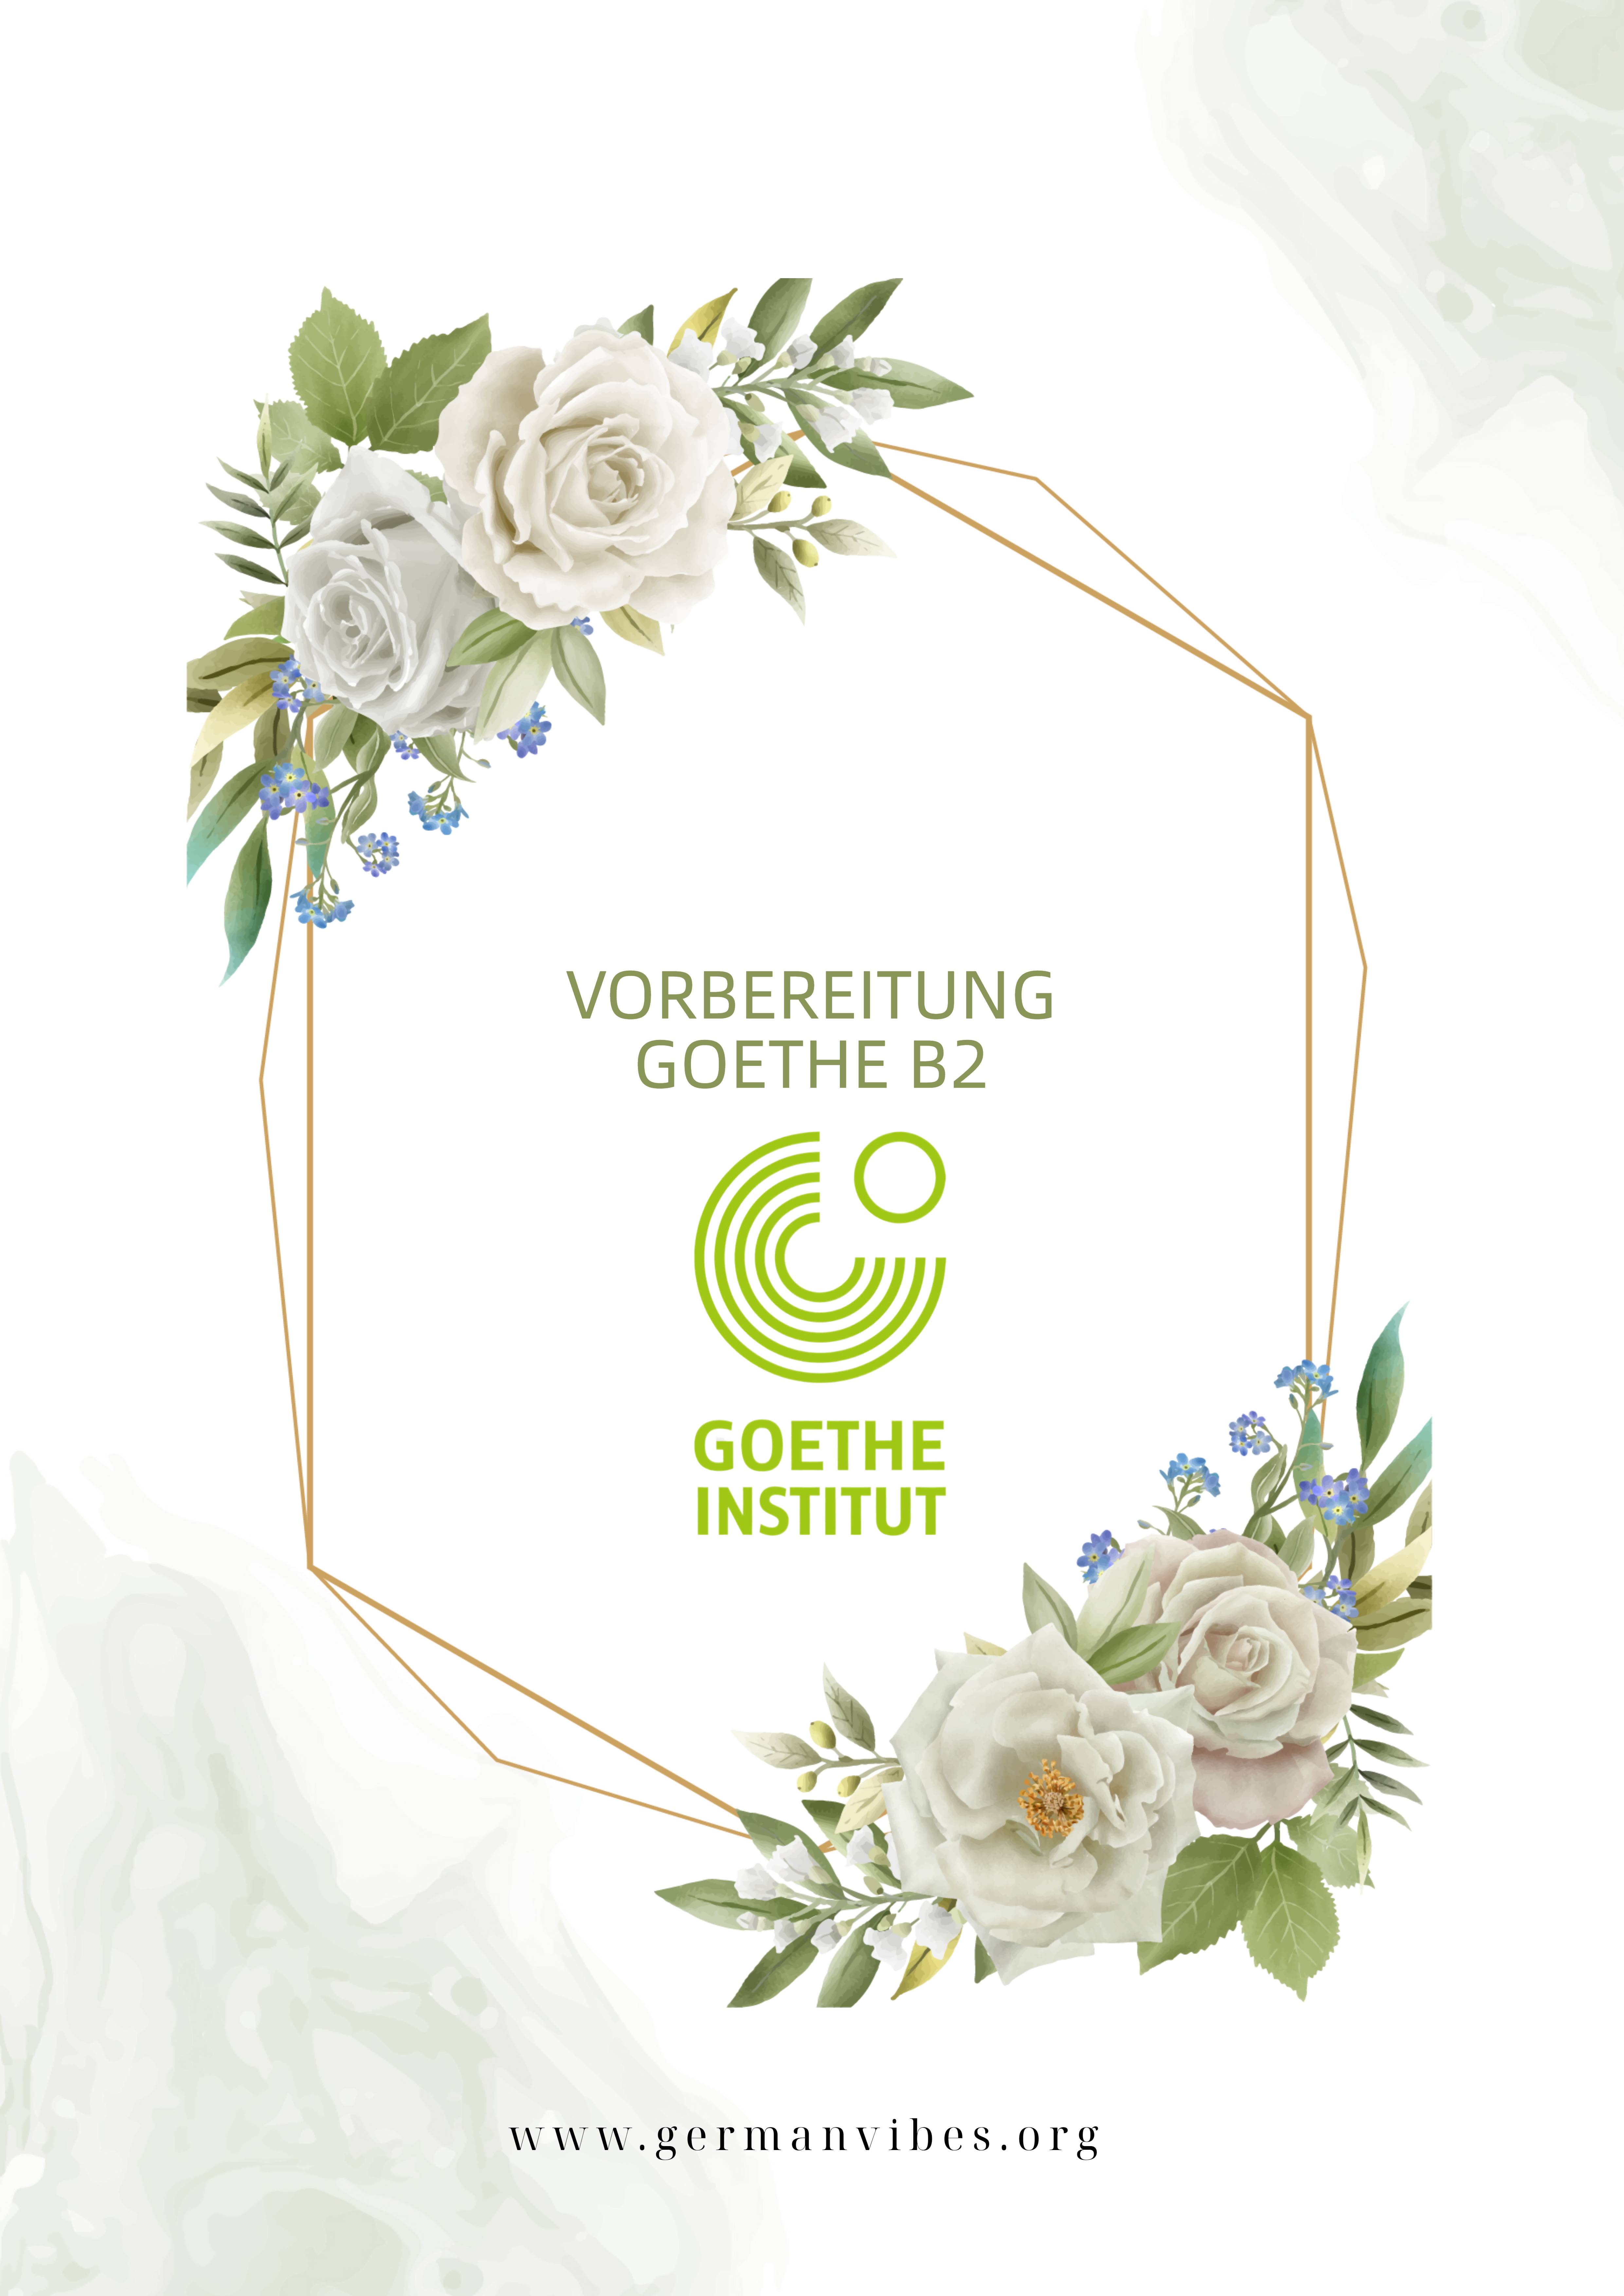 Vorbereitung Goethe B2 pdf